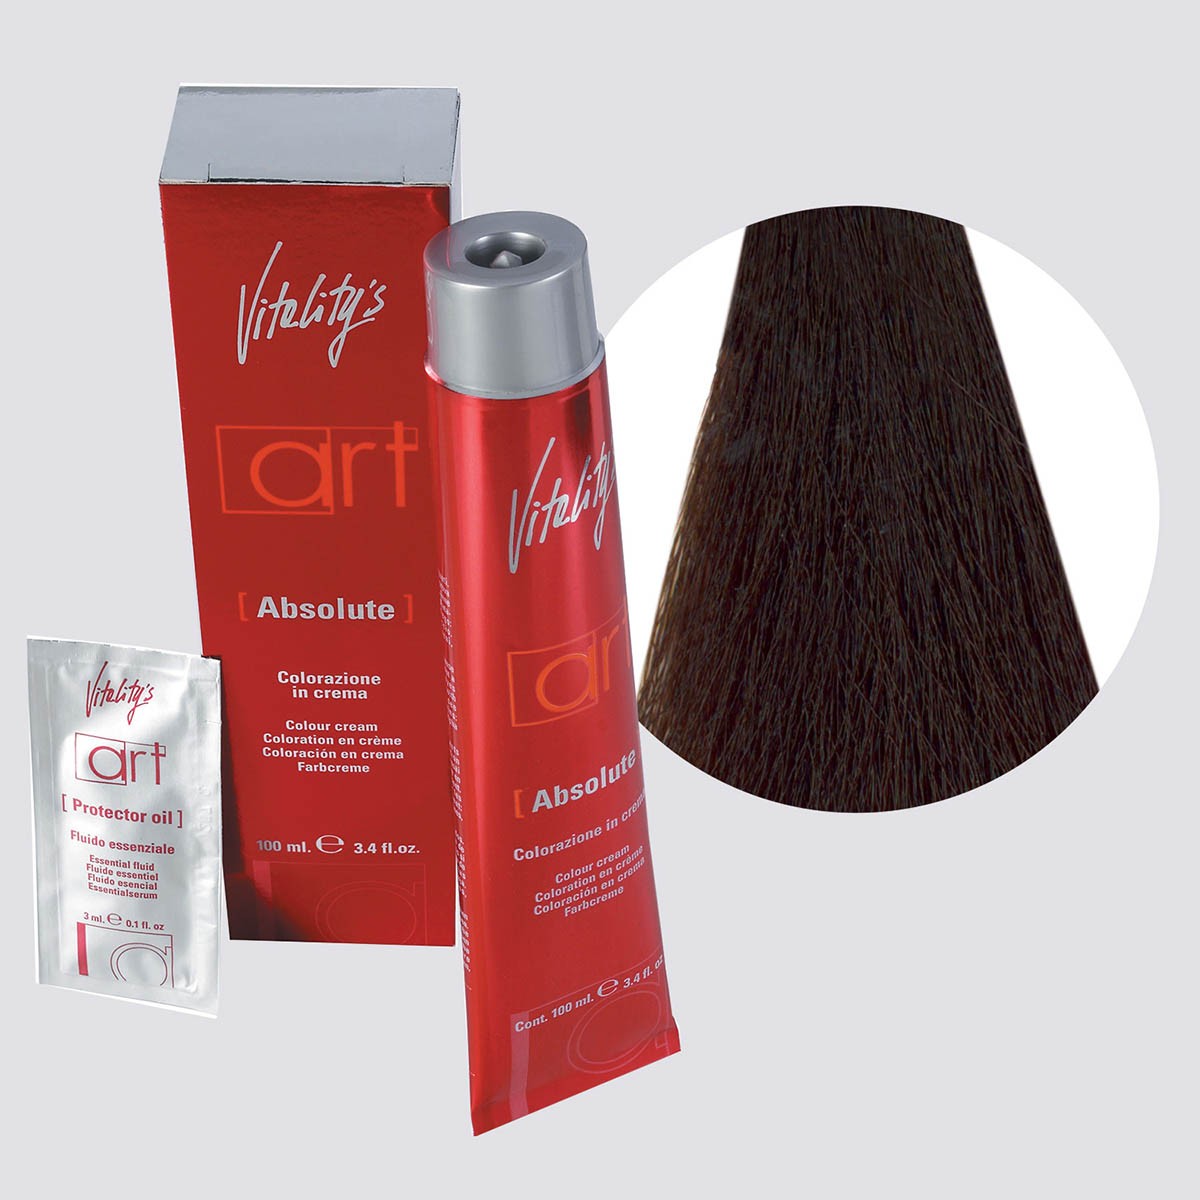 Acquista adesso Tinta capelli Vitality's Art Absolute castano dorato da 100 ml - 4/3 VITALITY'S 